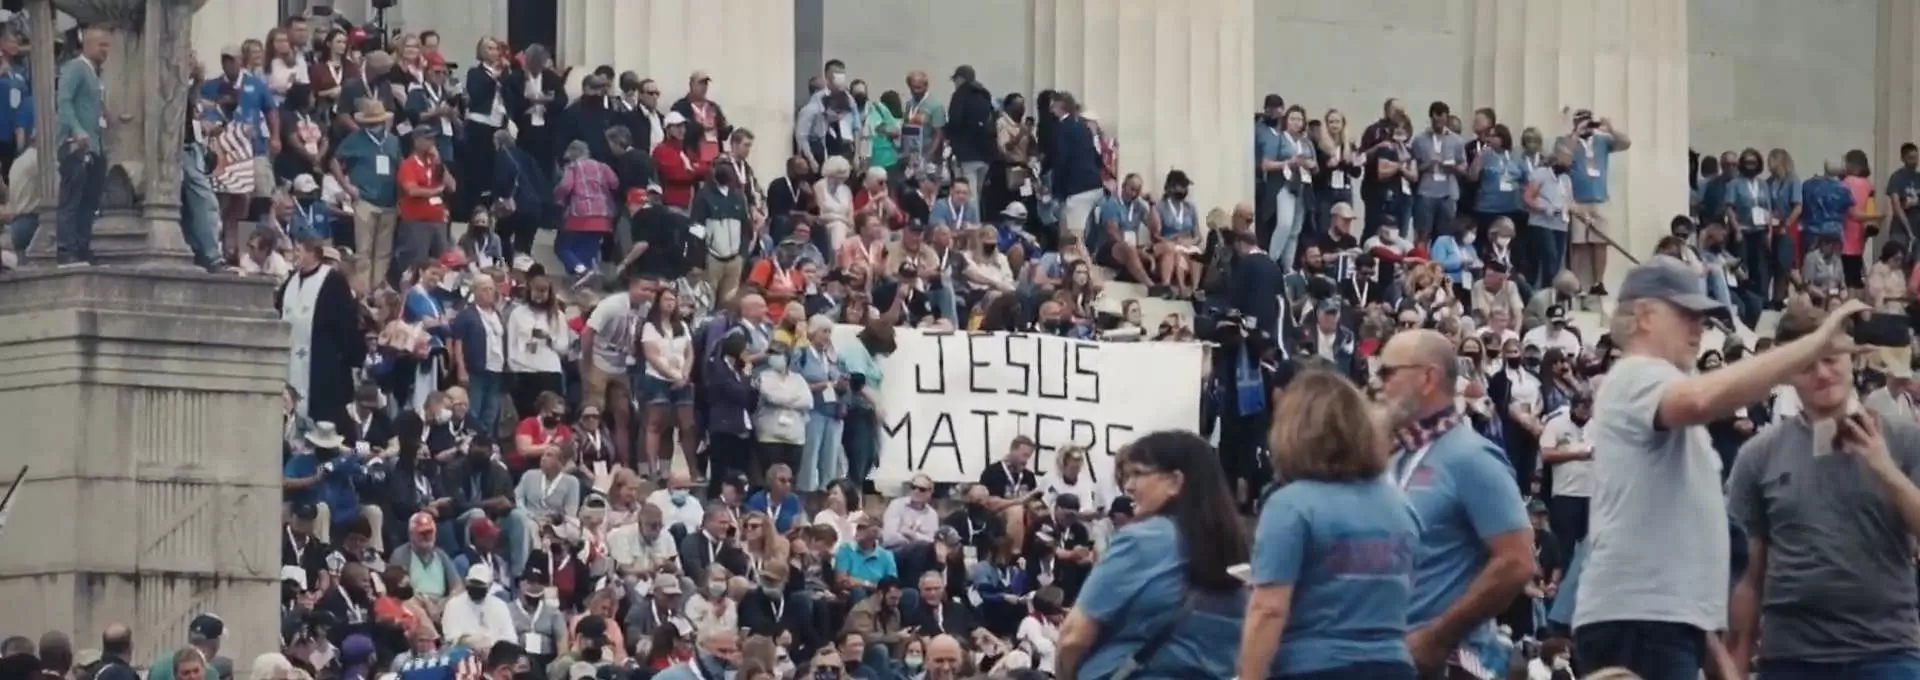 Totalbilde av demonstranter utenfor Det hvite hus i USA. Midt i folkemengden er en stor hvit banner med teksten "Jesus matters" skrevet med svarte bokstaver. Foto.